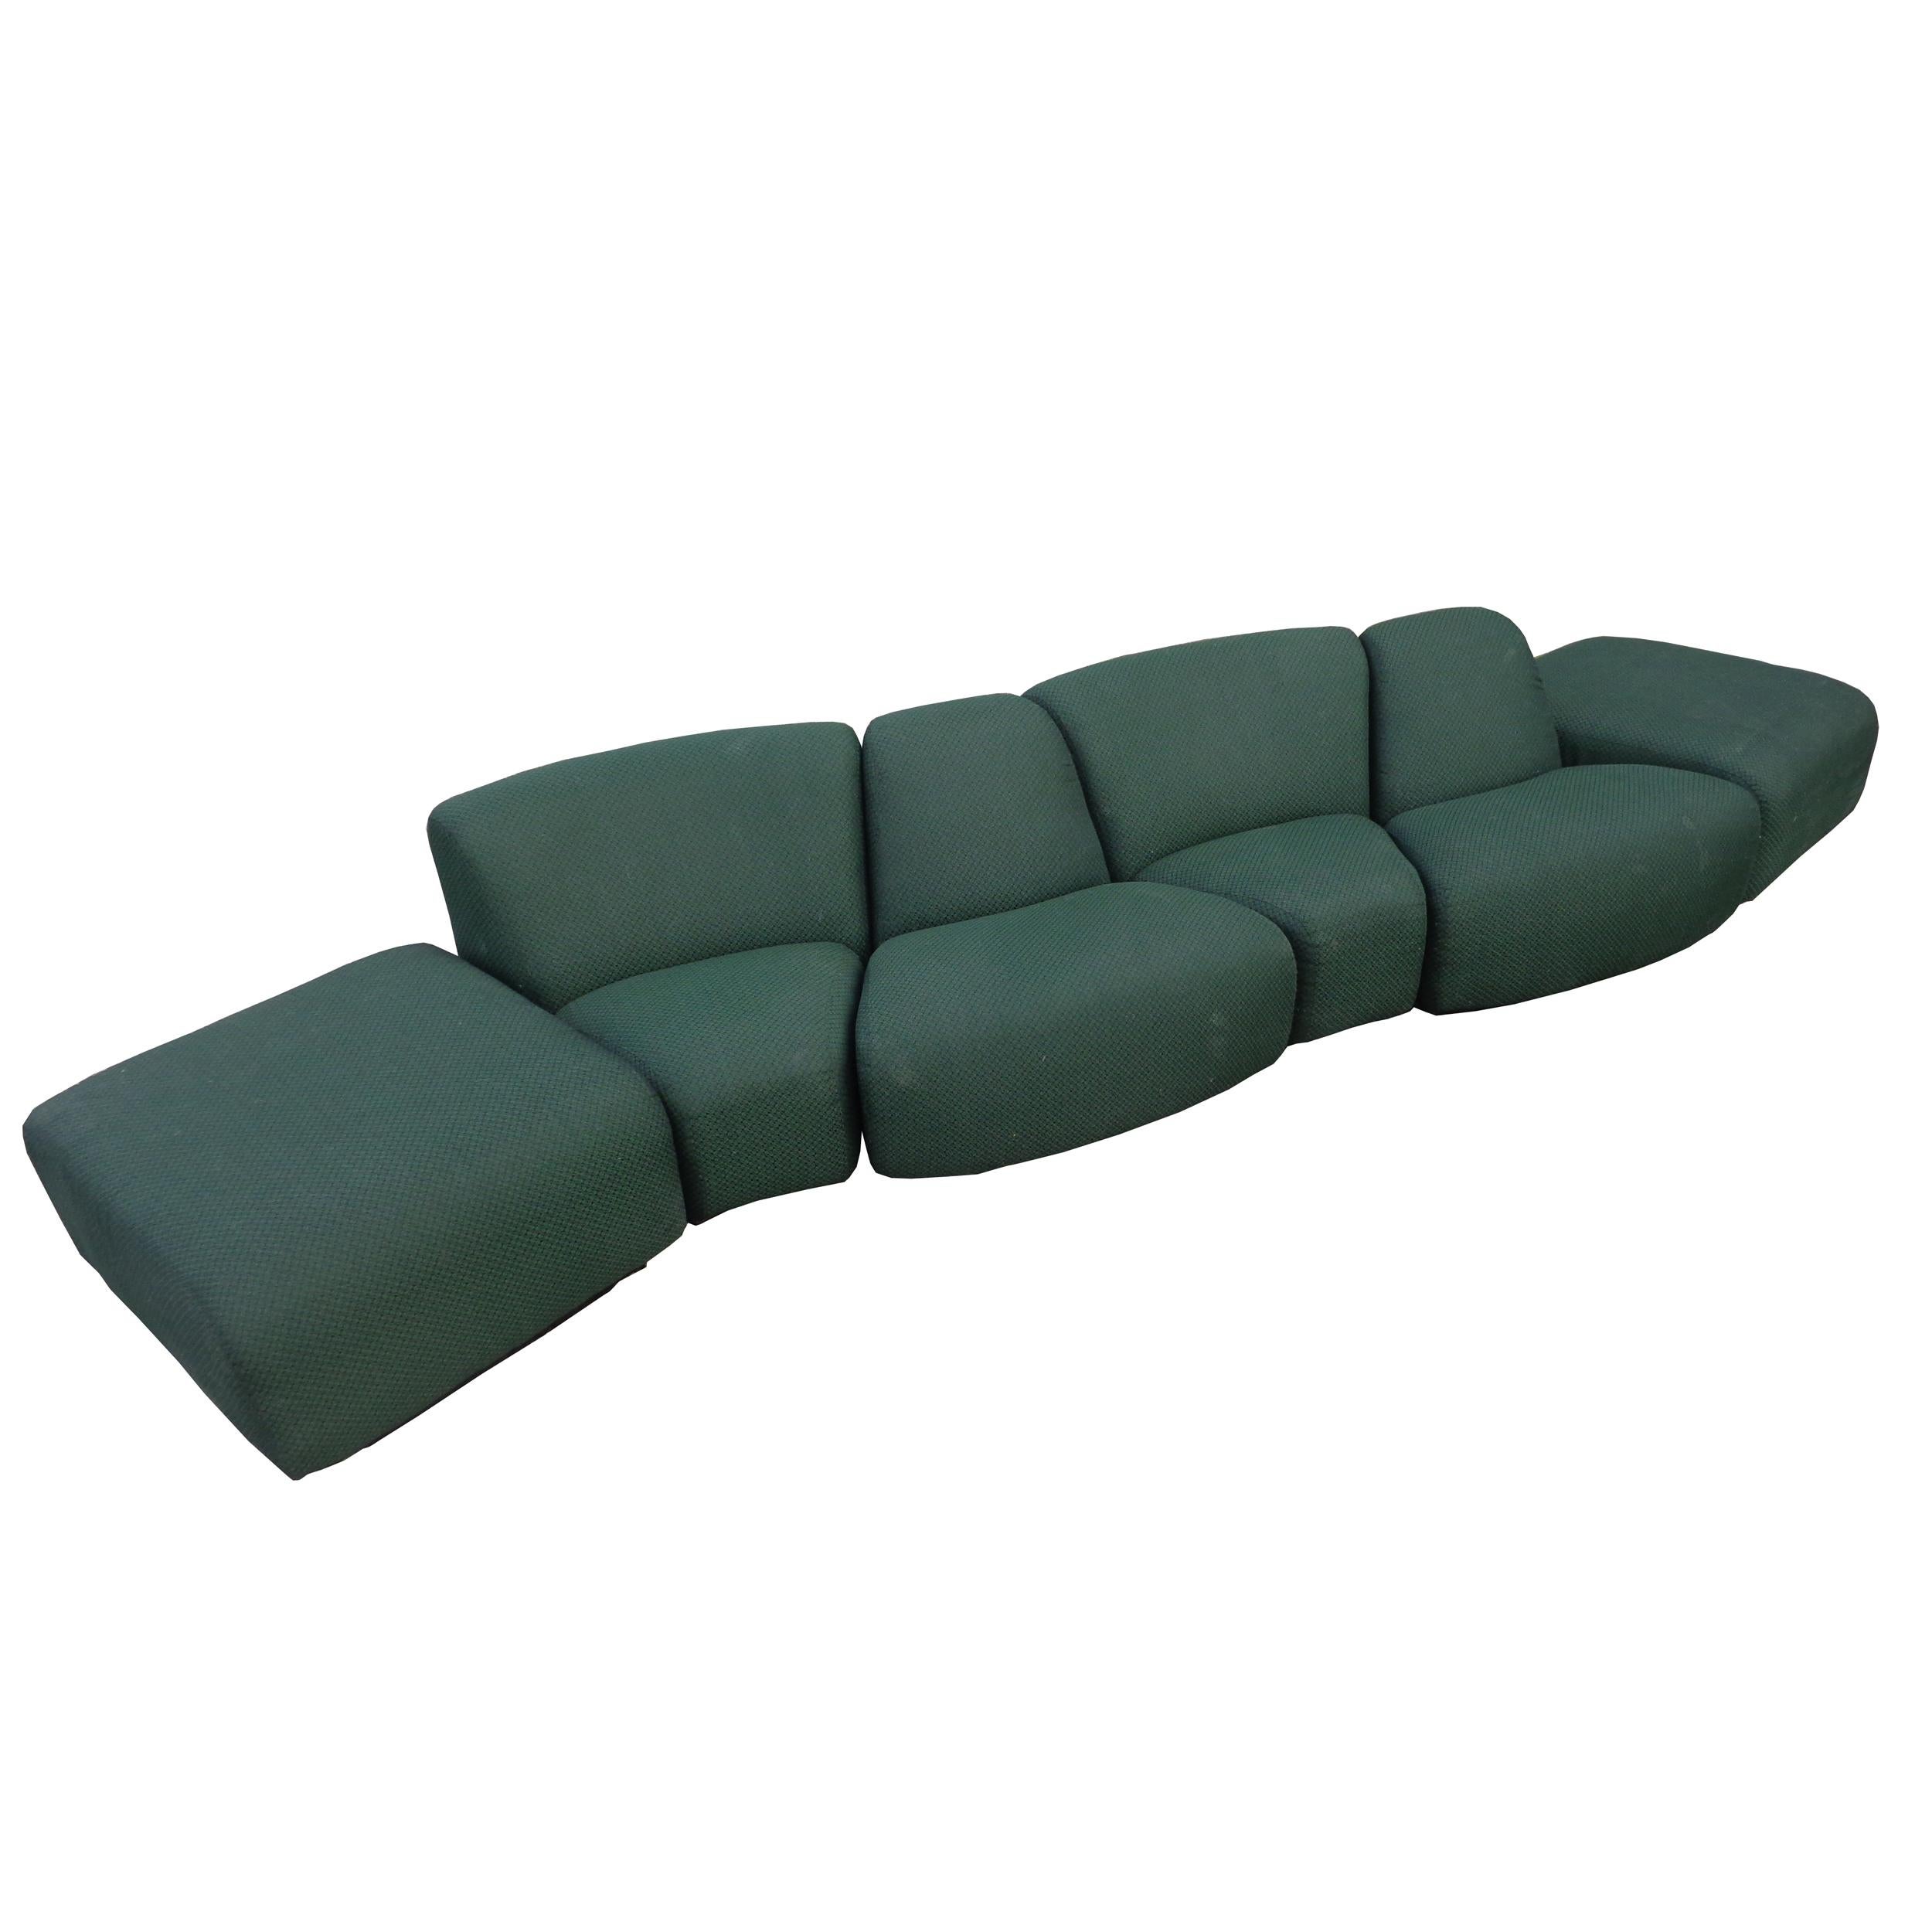 8 piece modular sectional sofa